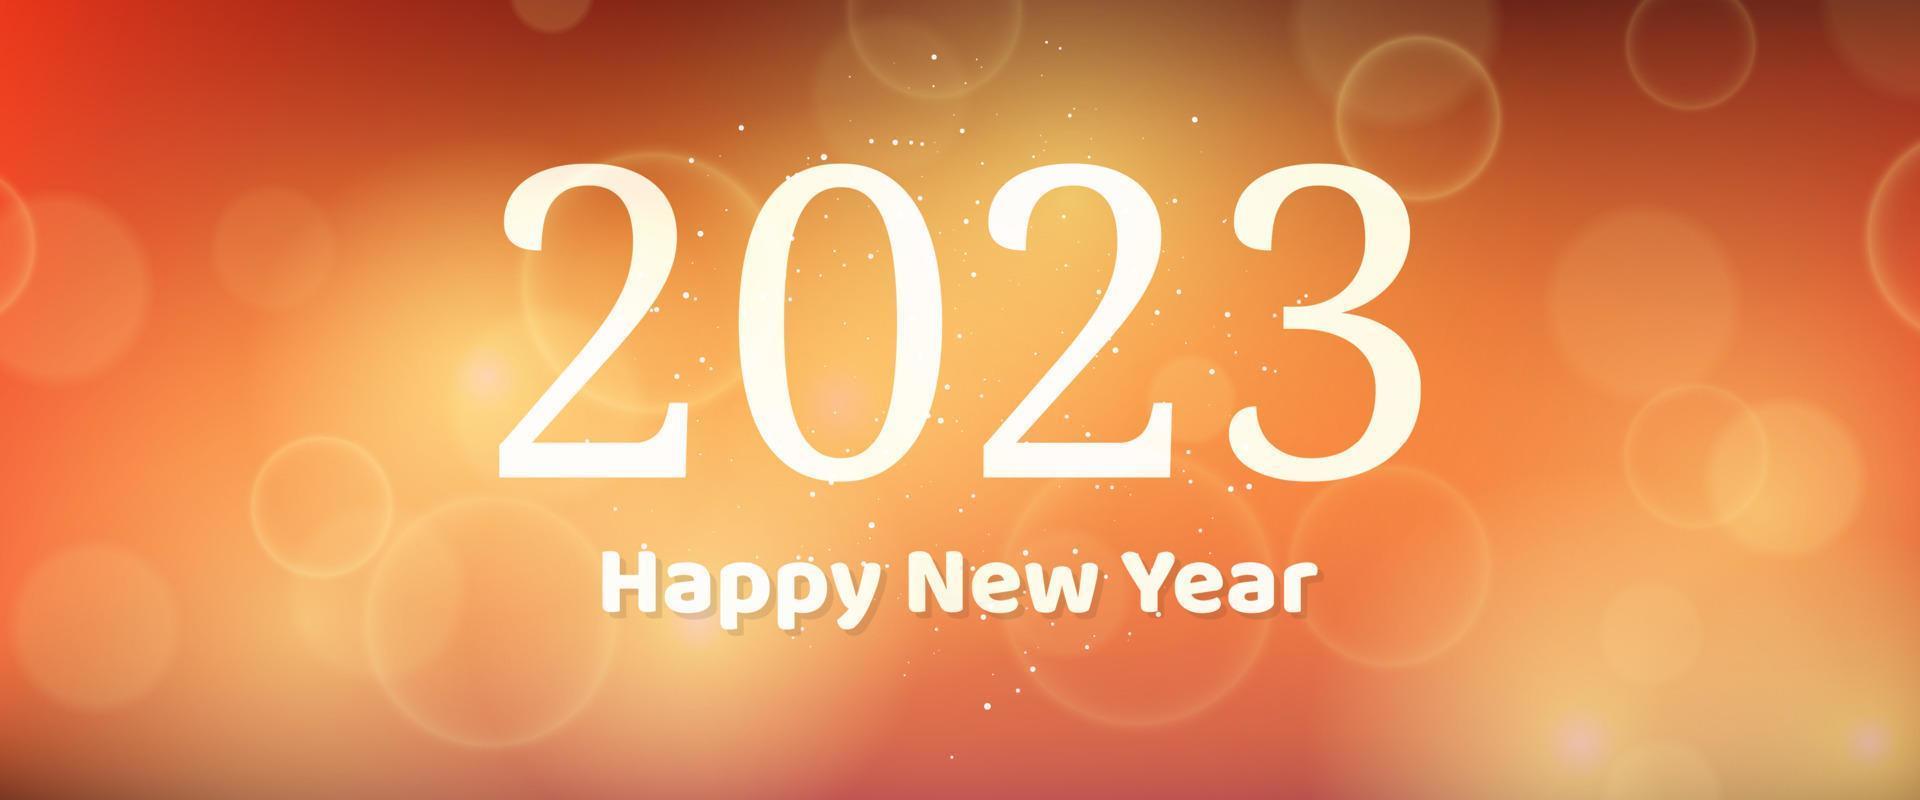 feliz ano novo 2023 inscrição no fundo desfocado vetor